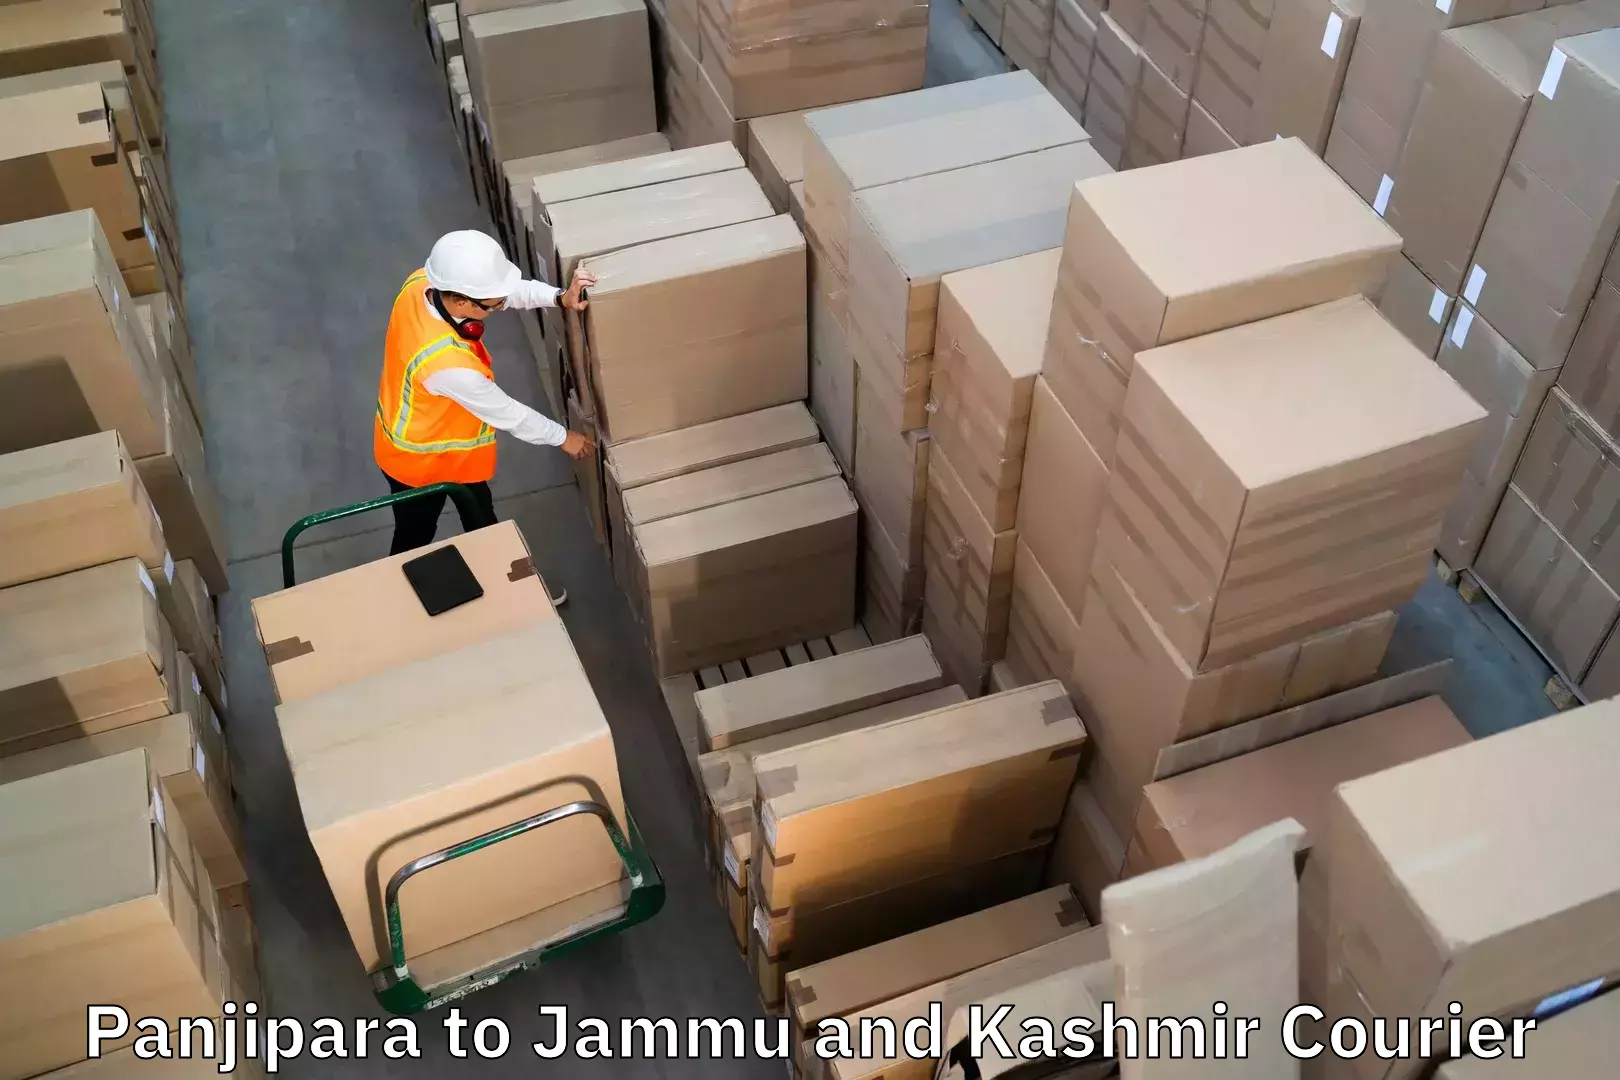 Luggage shipment specialists Panjipara to University of Jammu